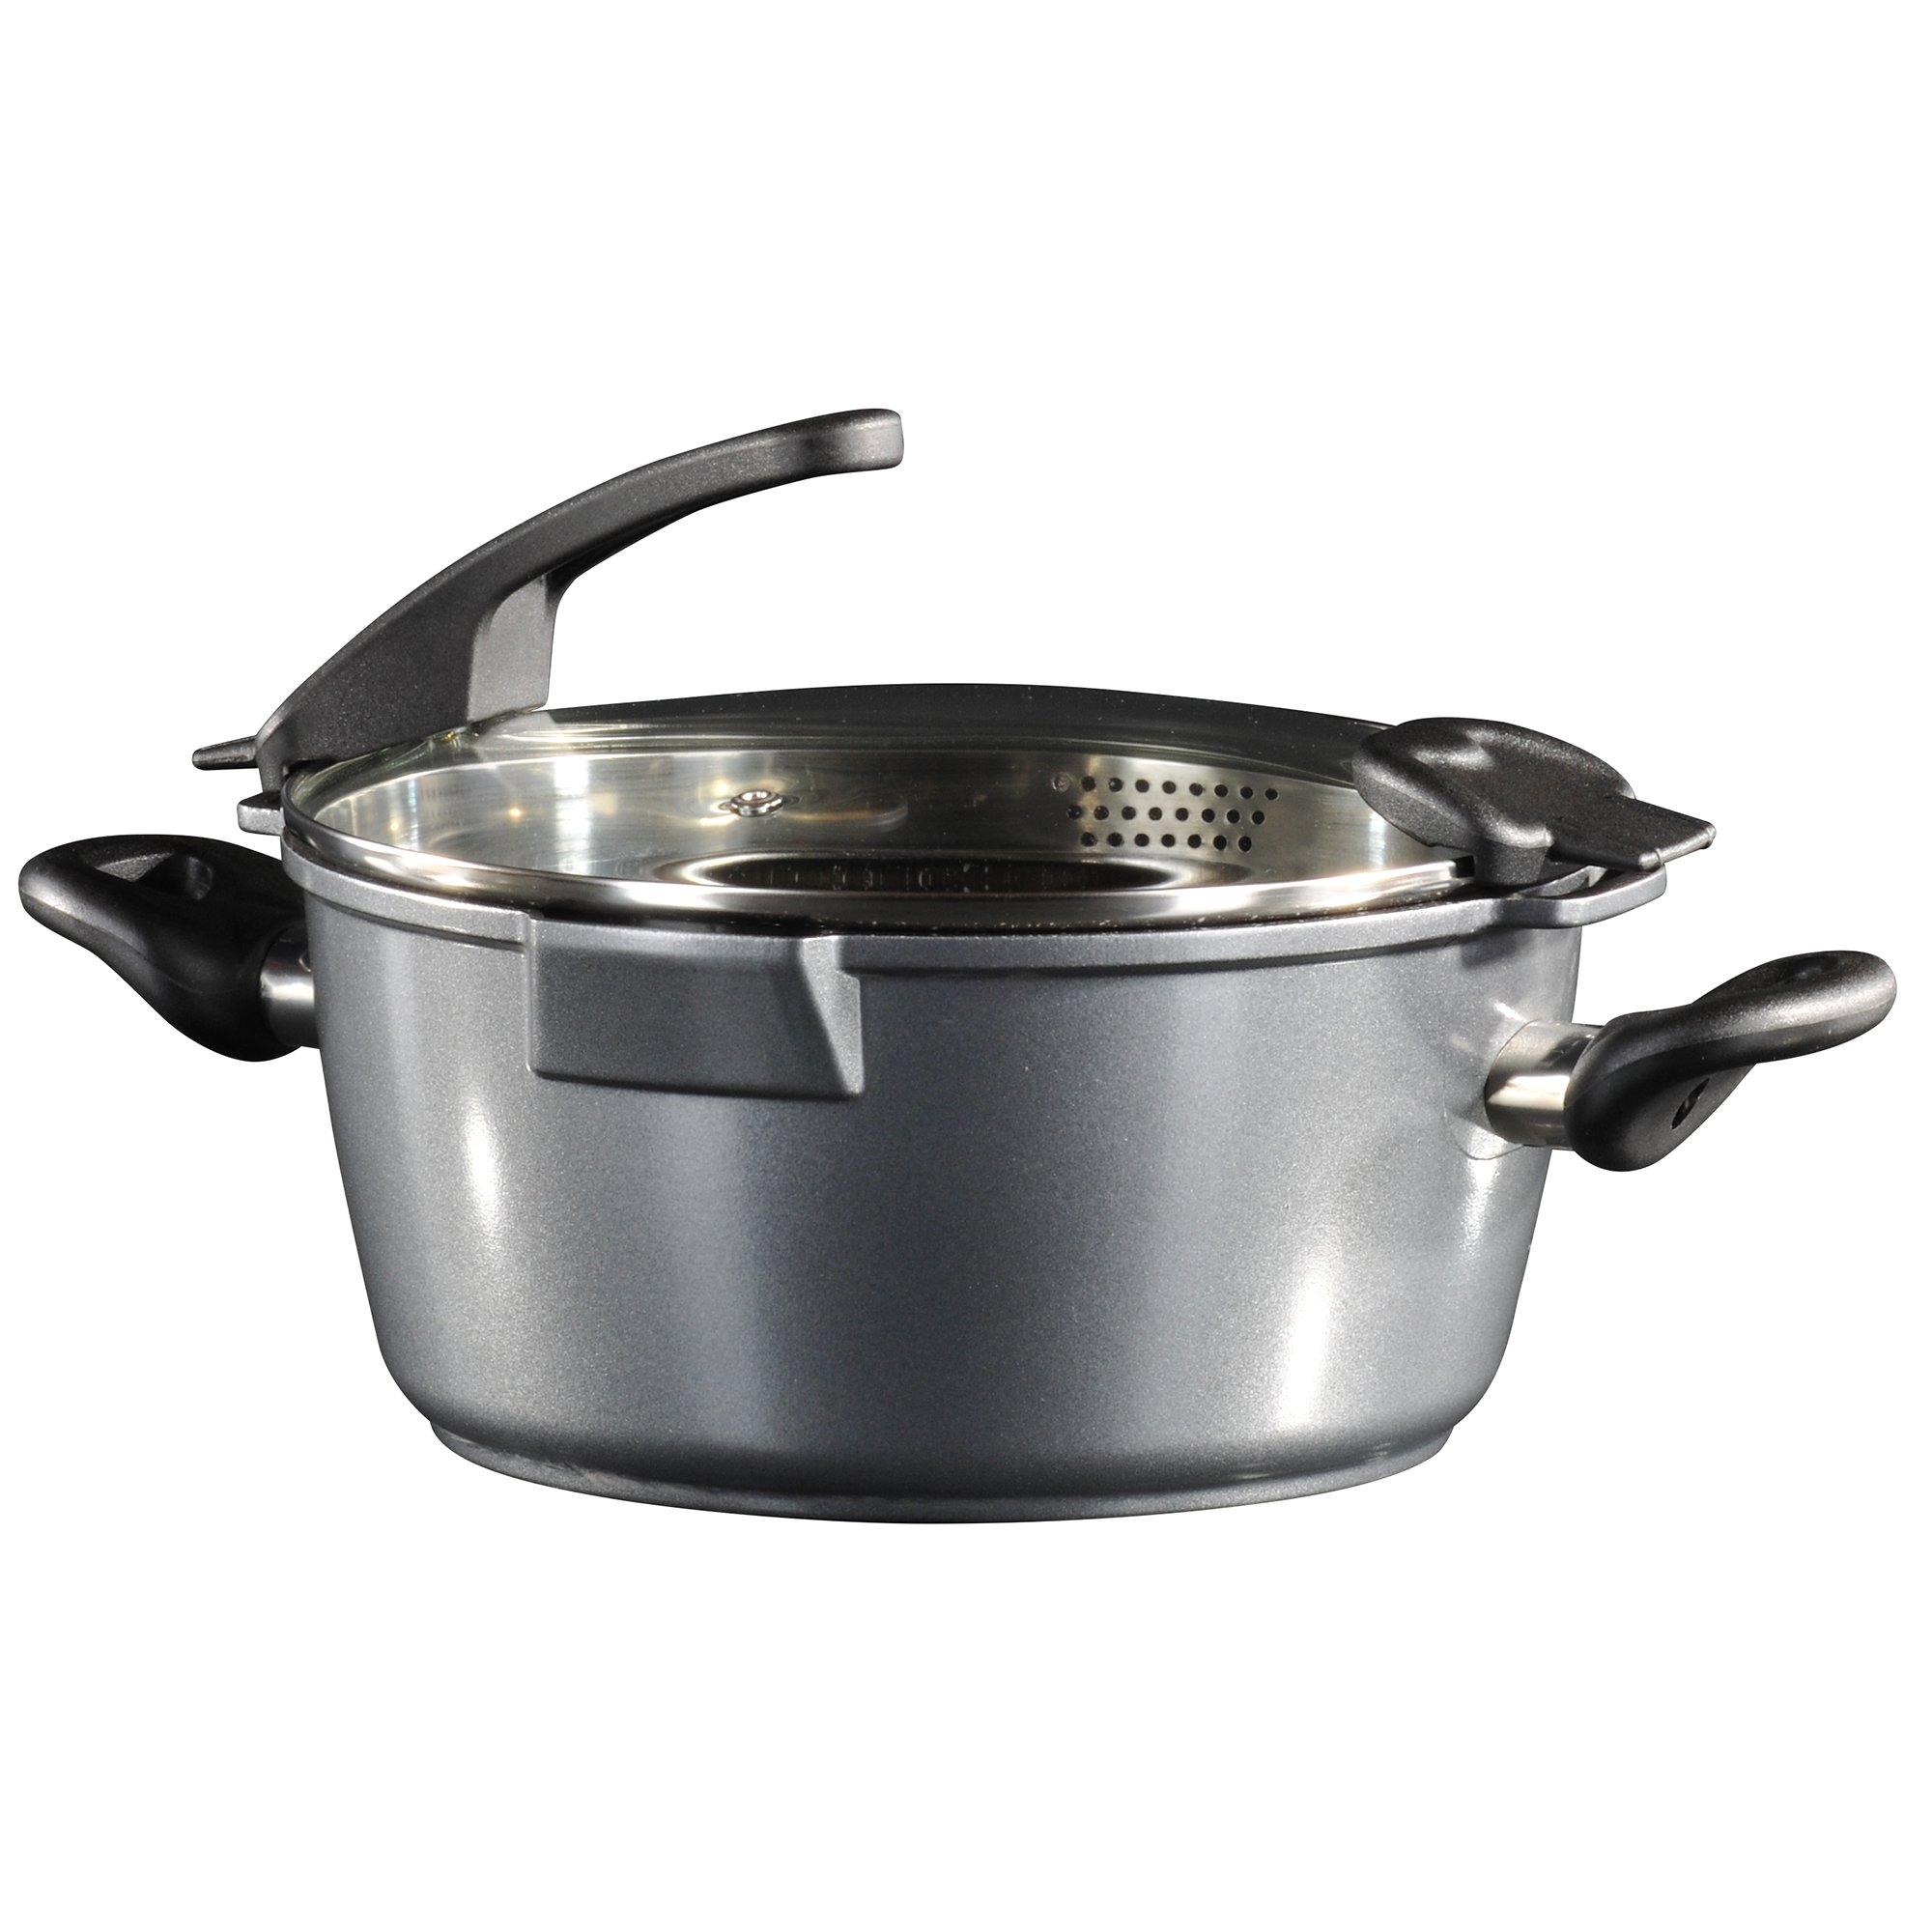 STONELINE® Cooking Pot 24 cm, Strainer Lid, 2 Spouts, Large Non-Stick Pot | FUTURE